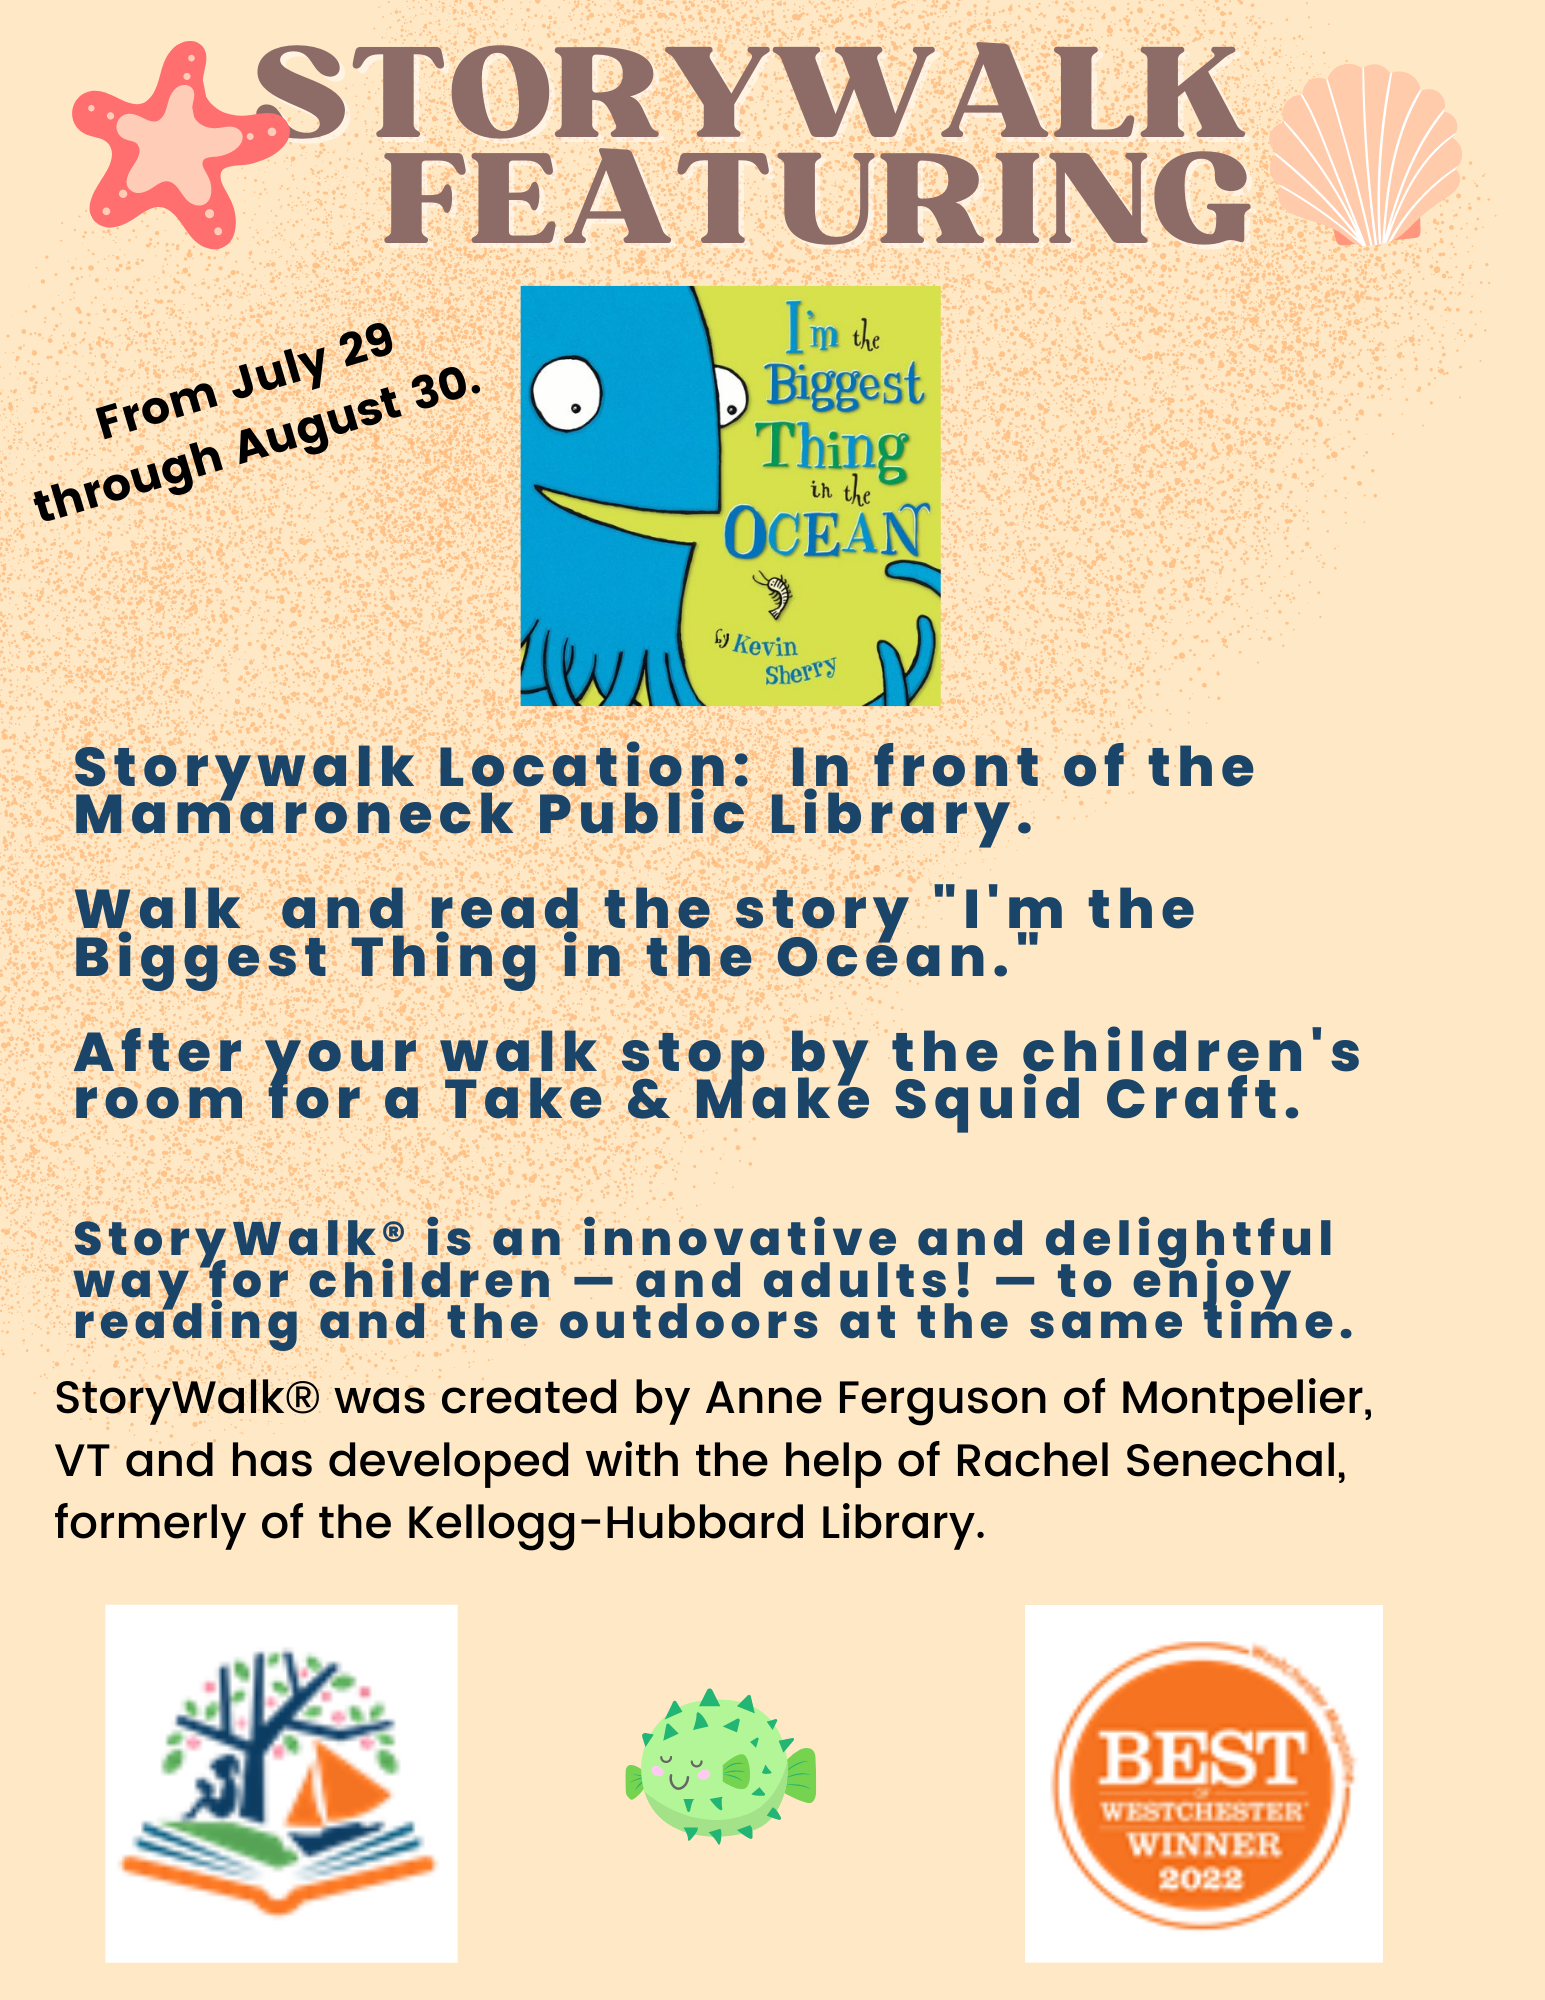 storywalk for children 7/29 - 8/30